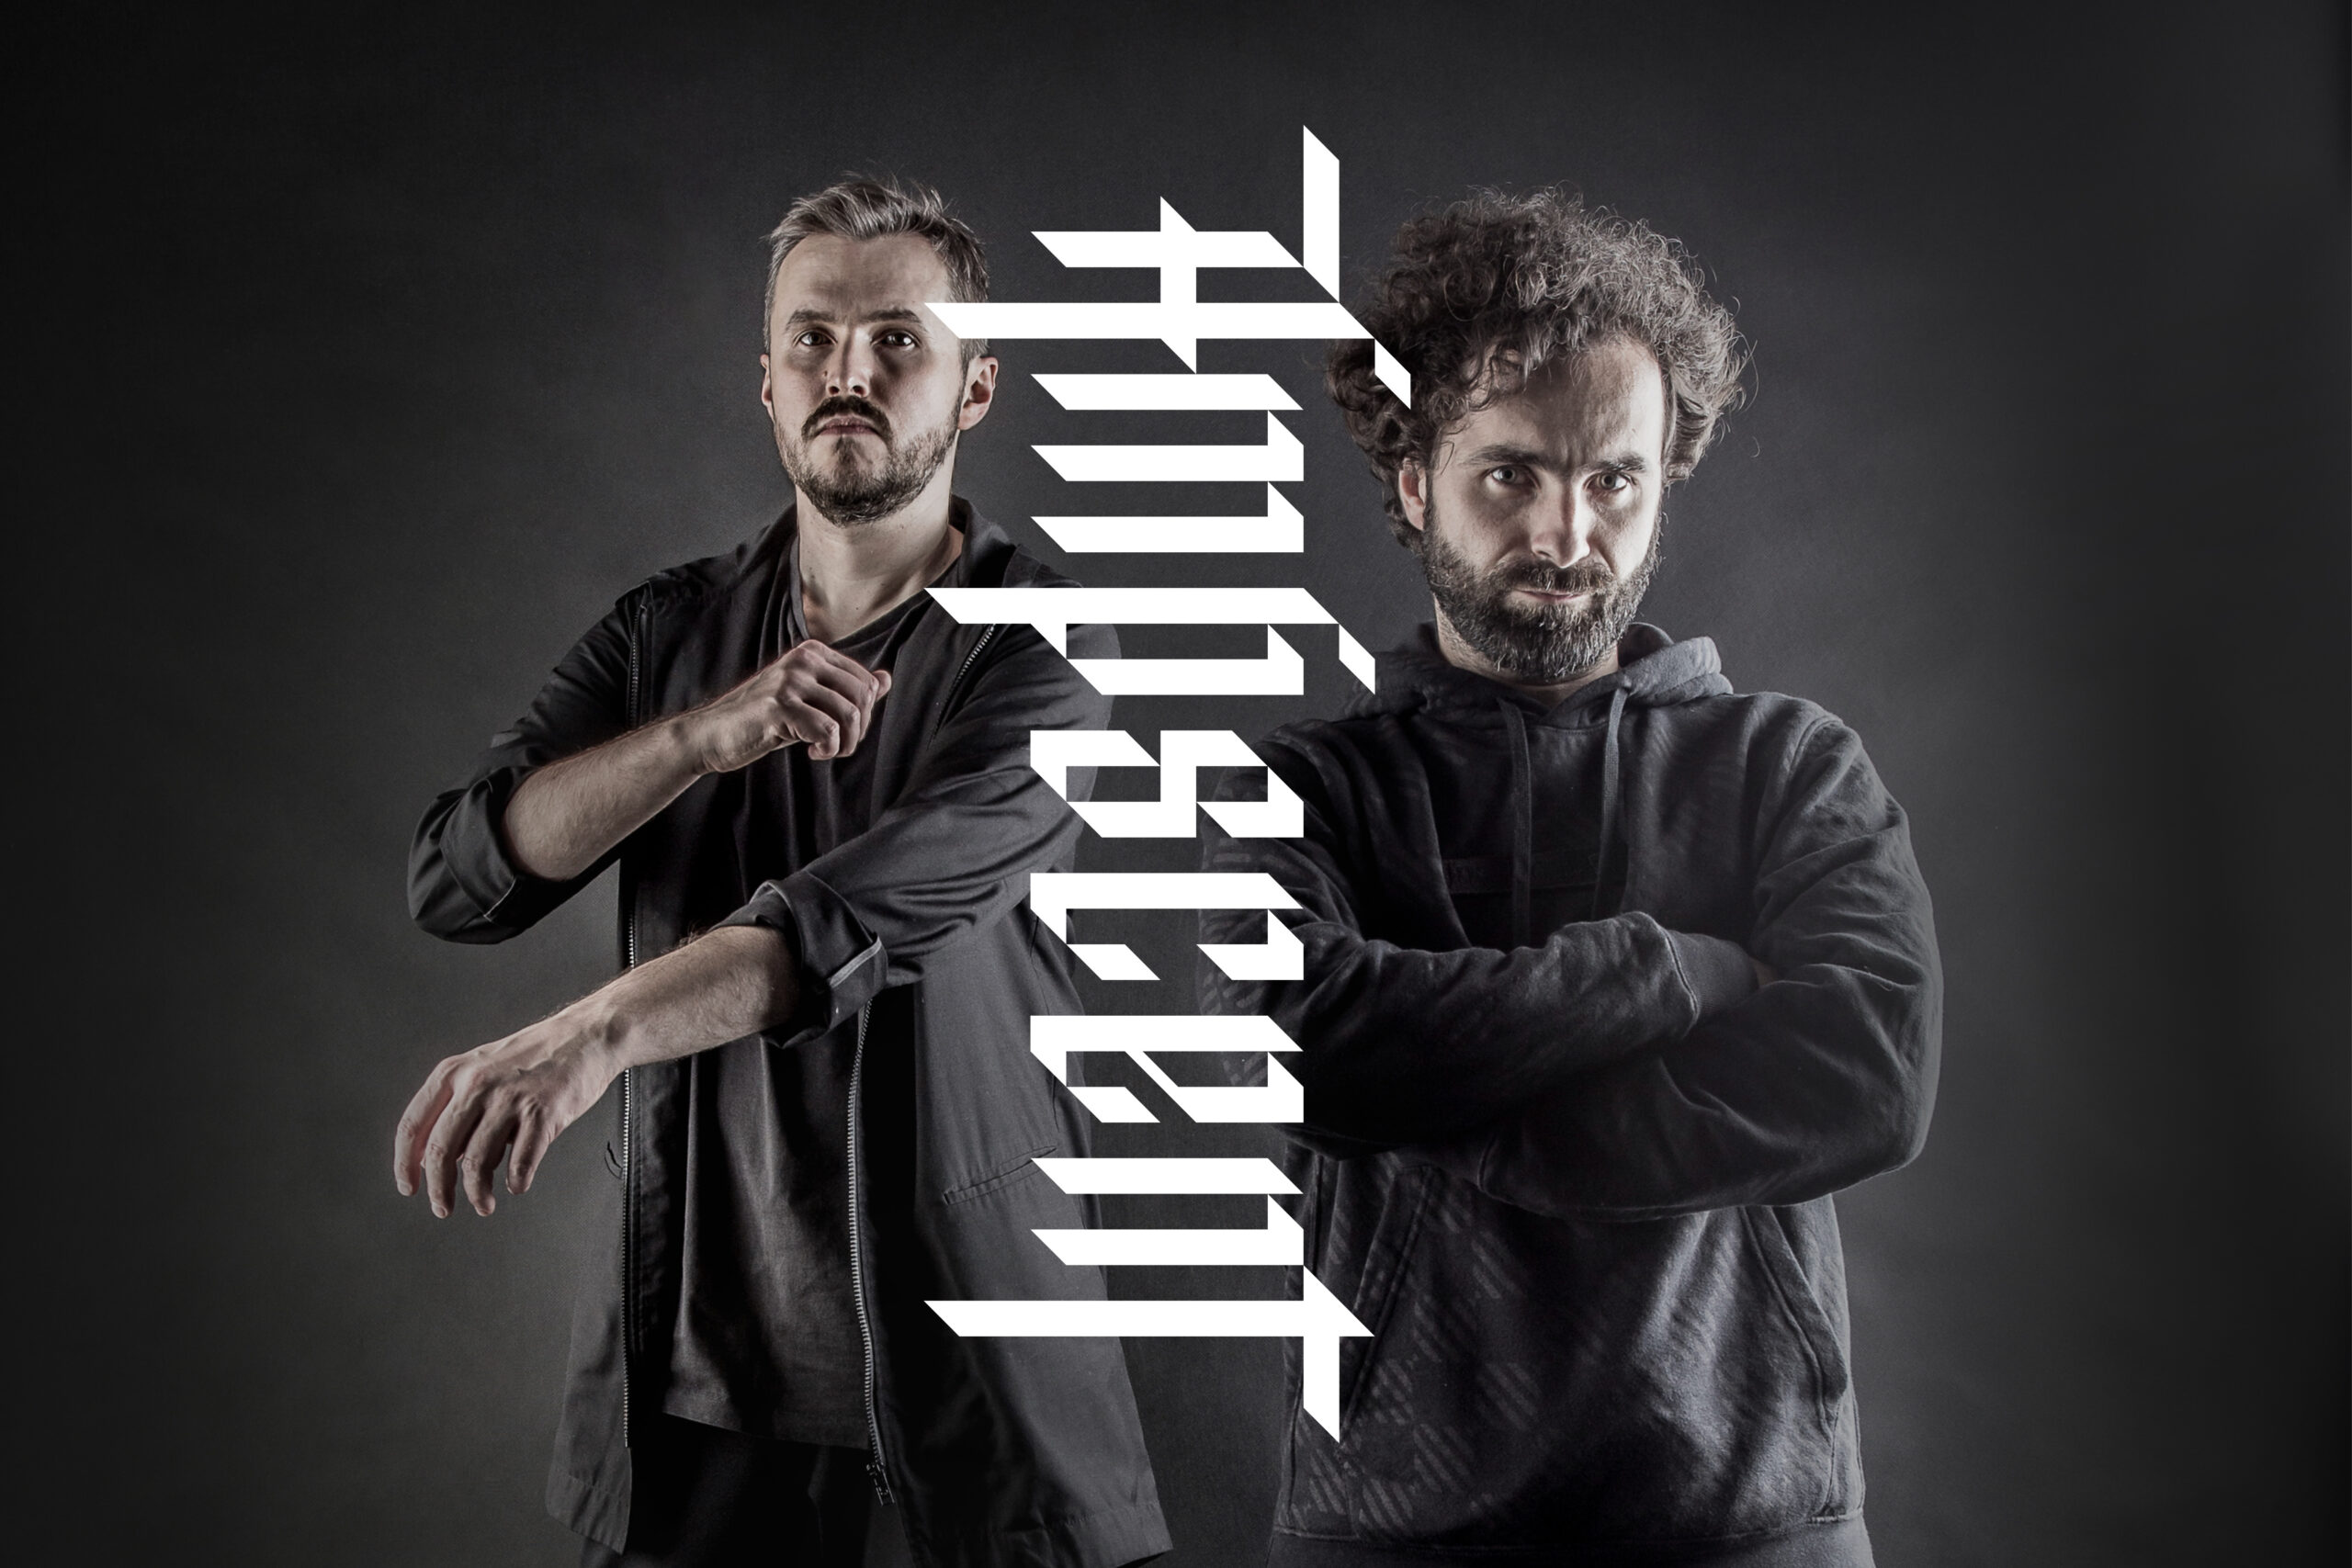 Ampscent – Jacek Doroszenko and Marcin Sipiora